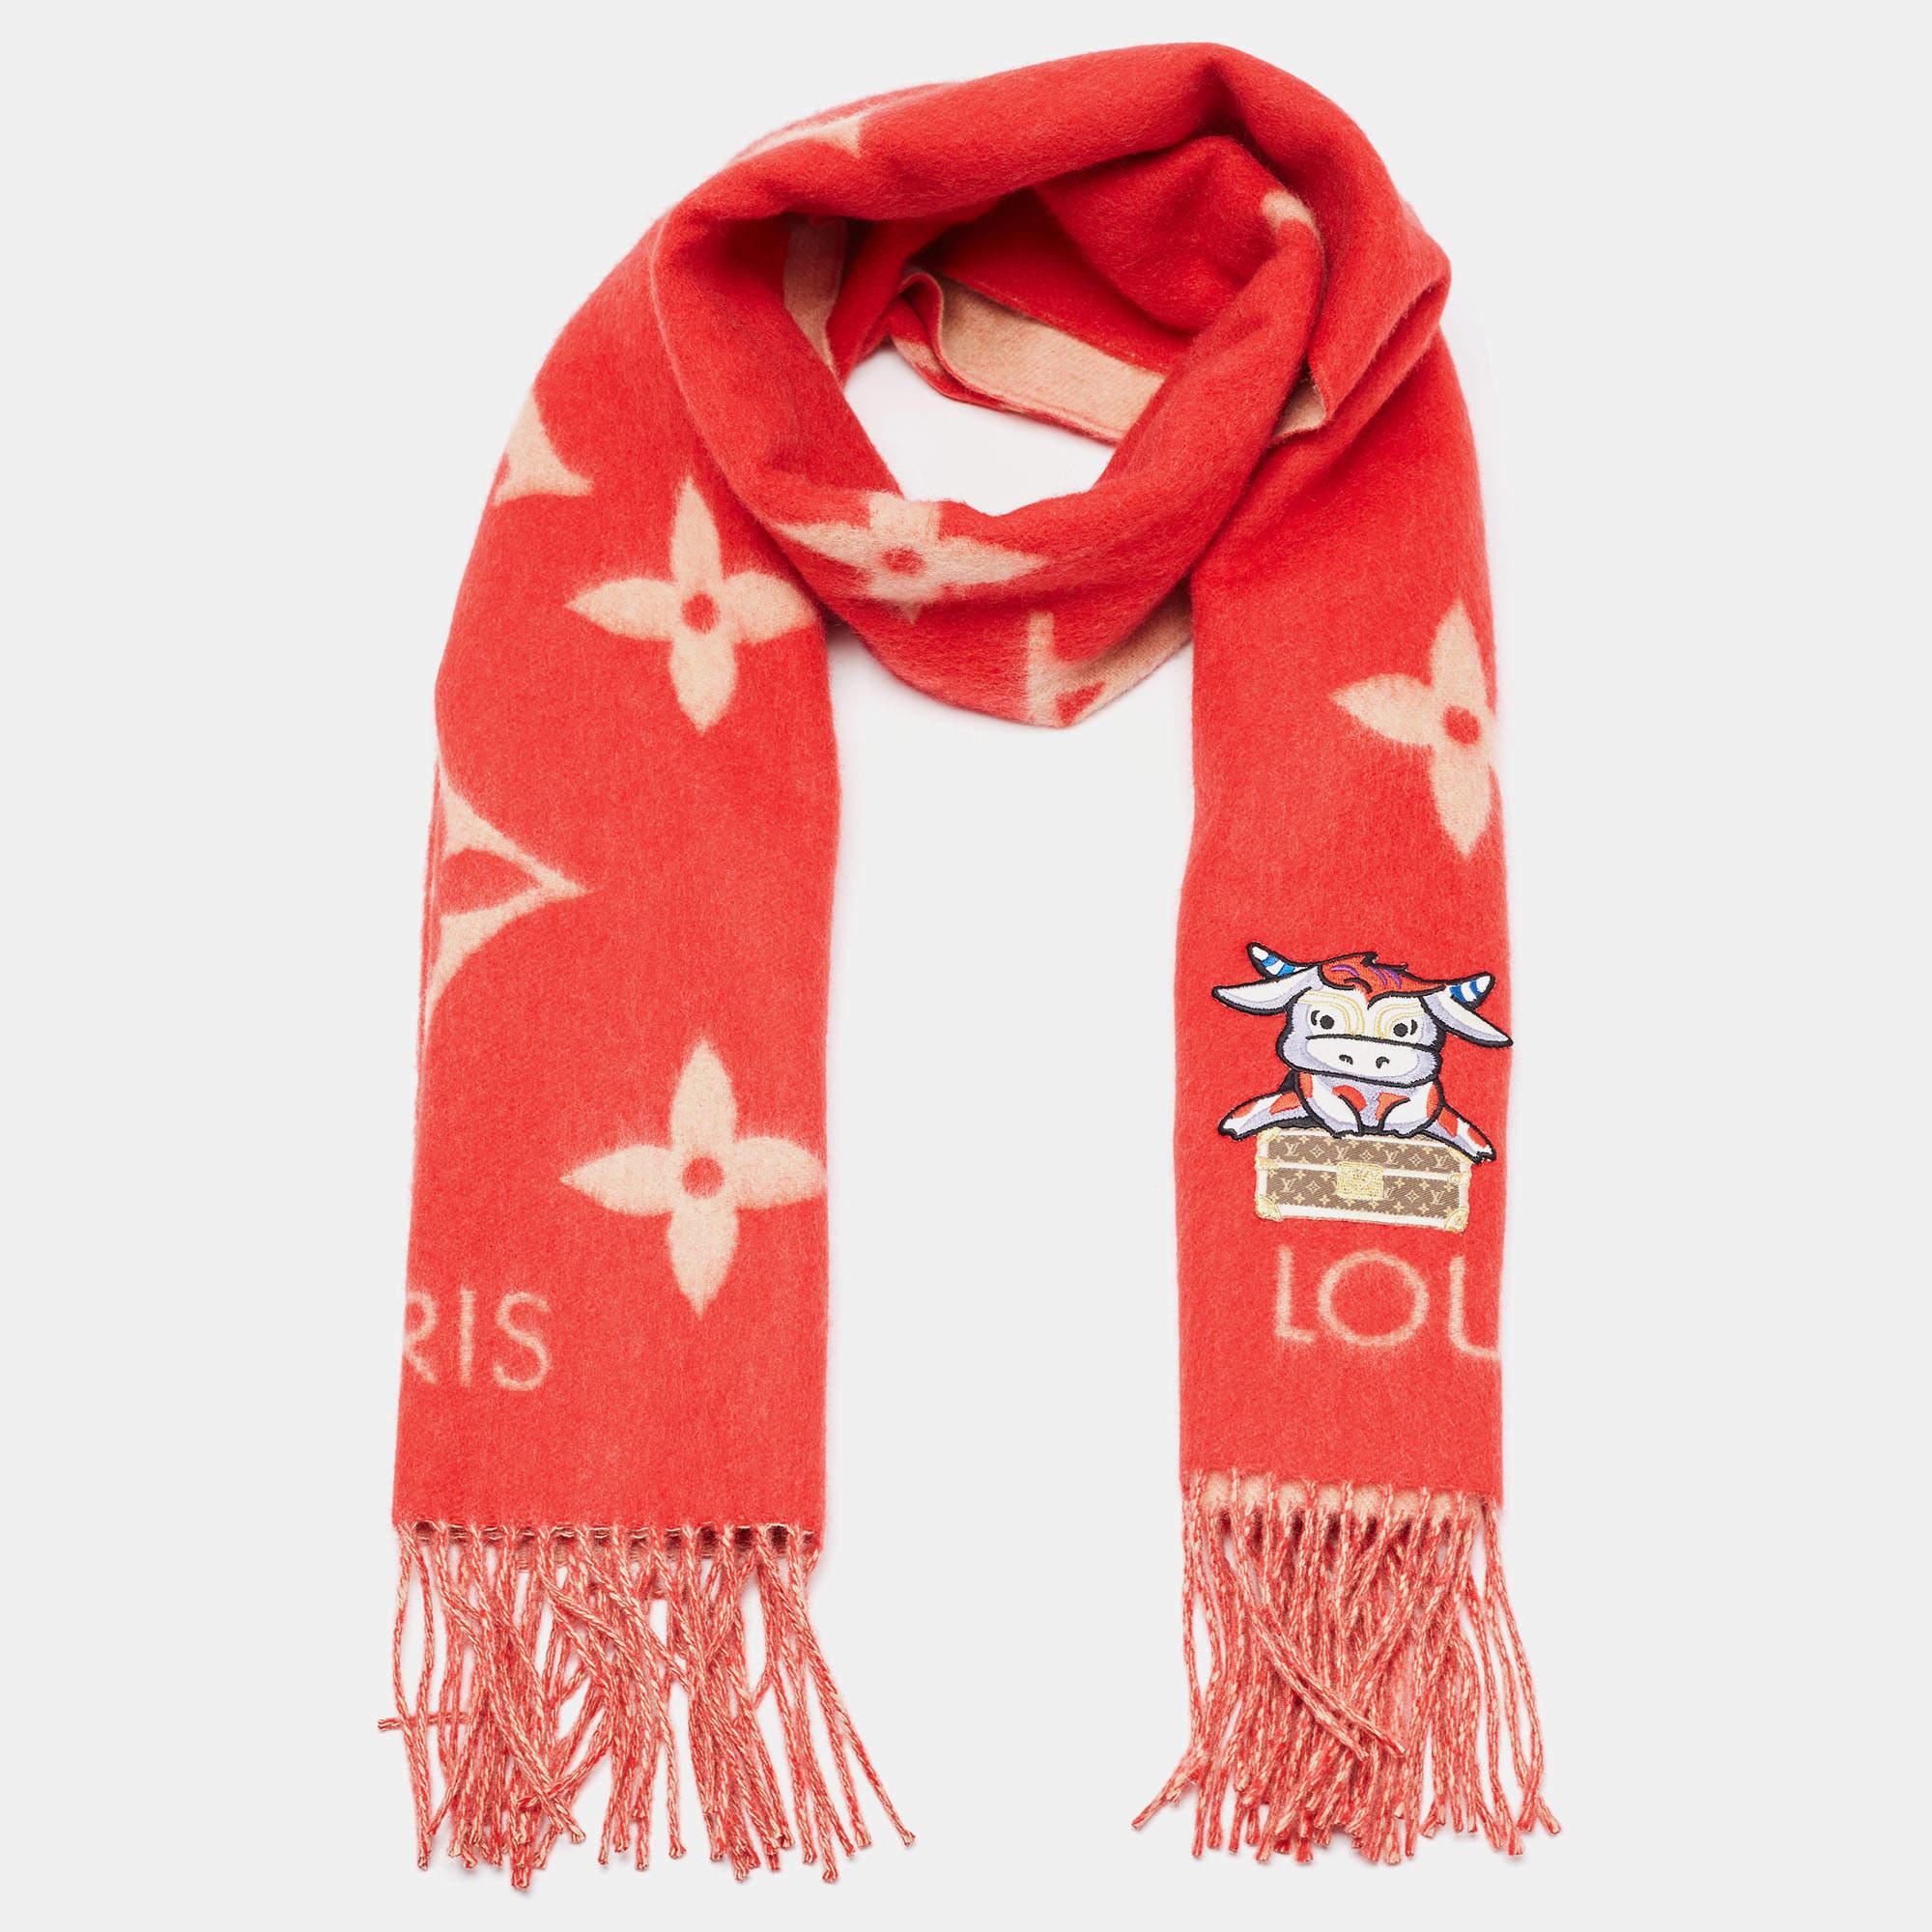 Très agréable à regarder, cette écharpe Louis Vuitton complétera vos tenues d'hiver et vous tiendra chaud. L'écharpe rouge est en cachemire et porte le Monogramme sur toute sa surface.




